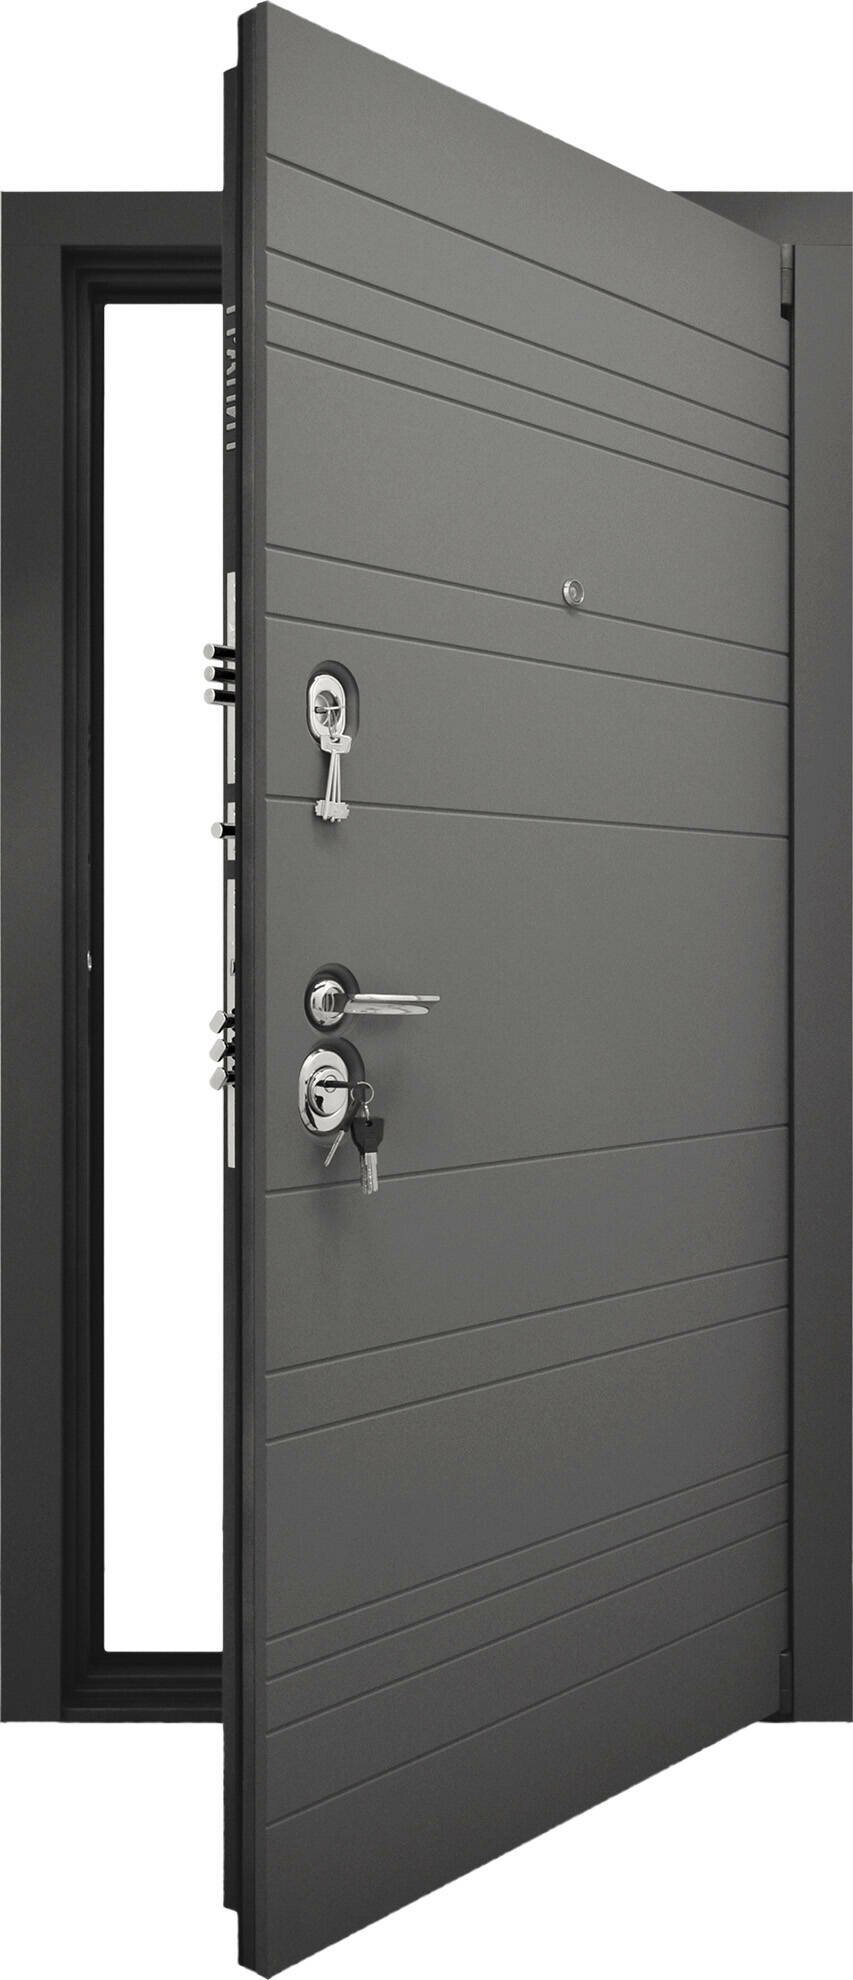 Гранит С9 дверь металлическая внешняя сторона фрезерованная МДФ панель 16мм, цвет Серый шелк